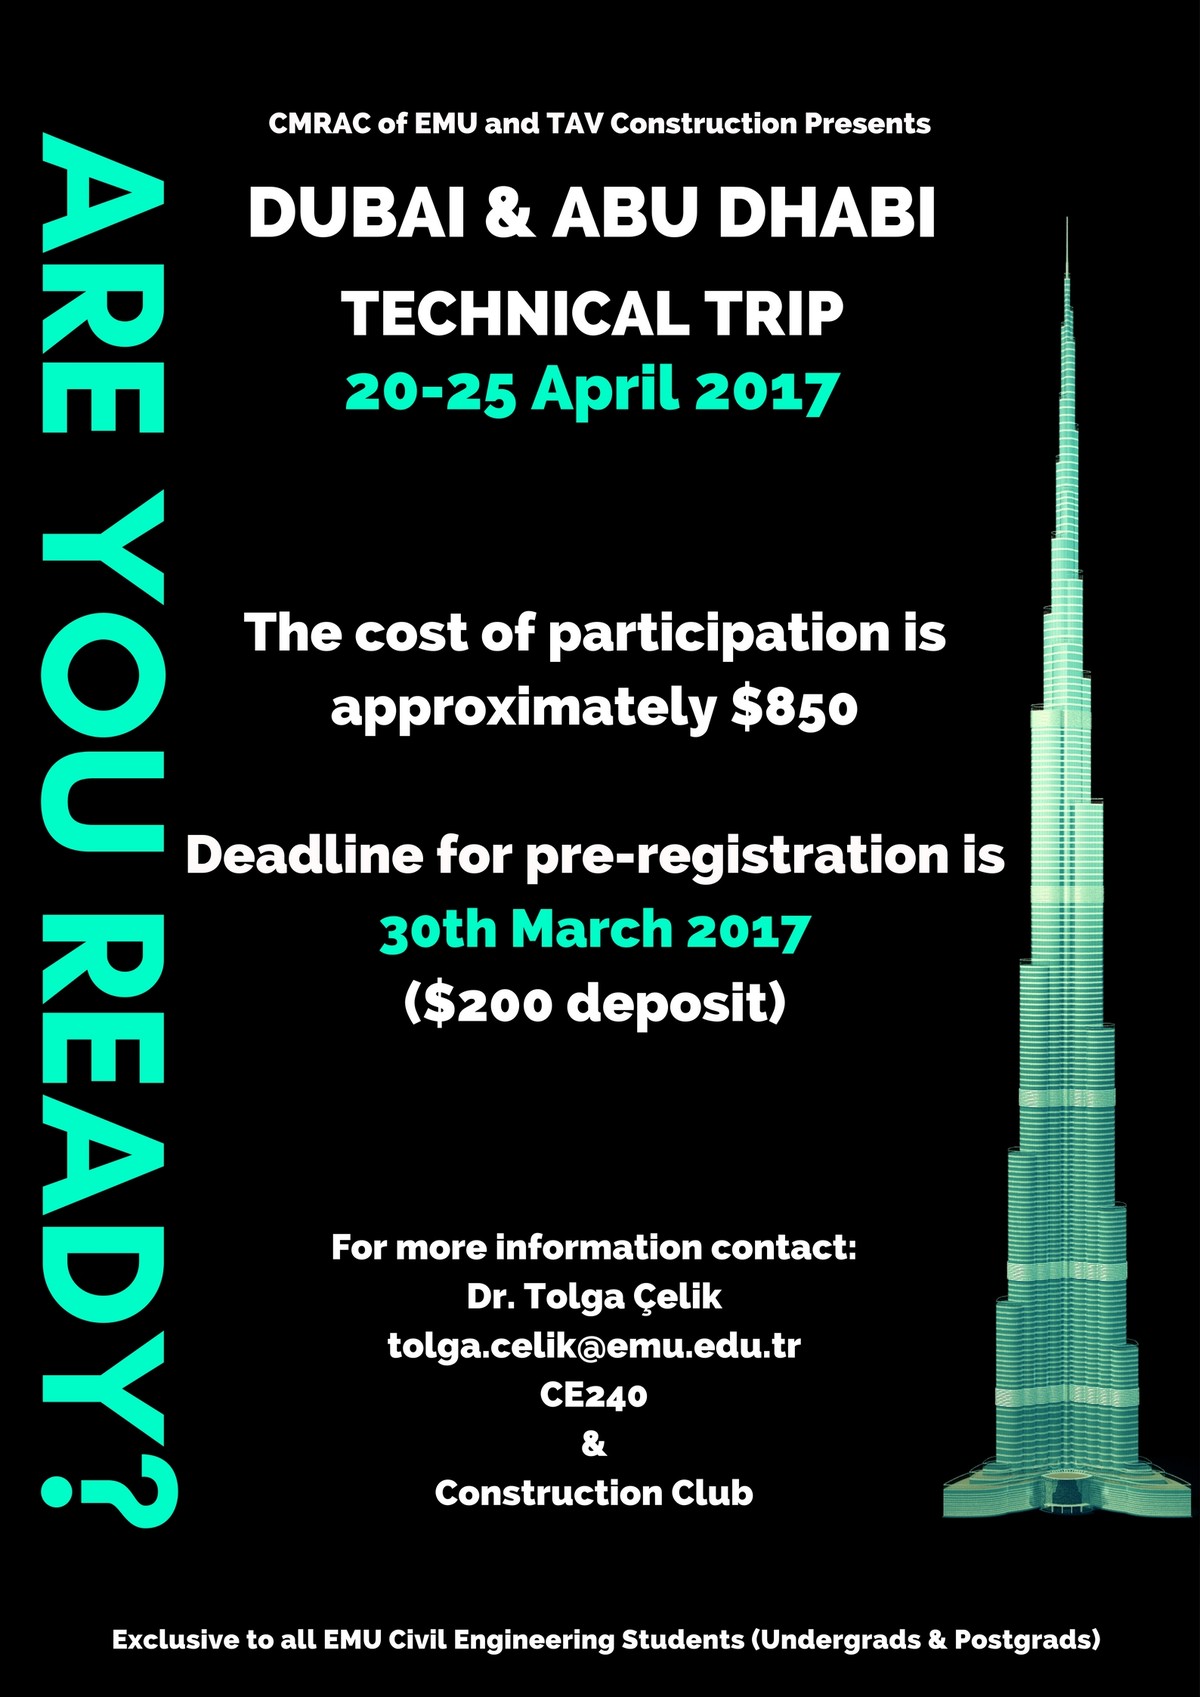 Dubai & Abu Dhabi Technical Trip Announcement